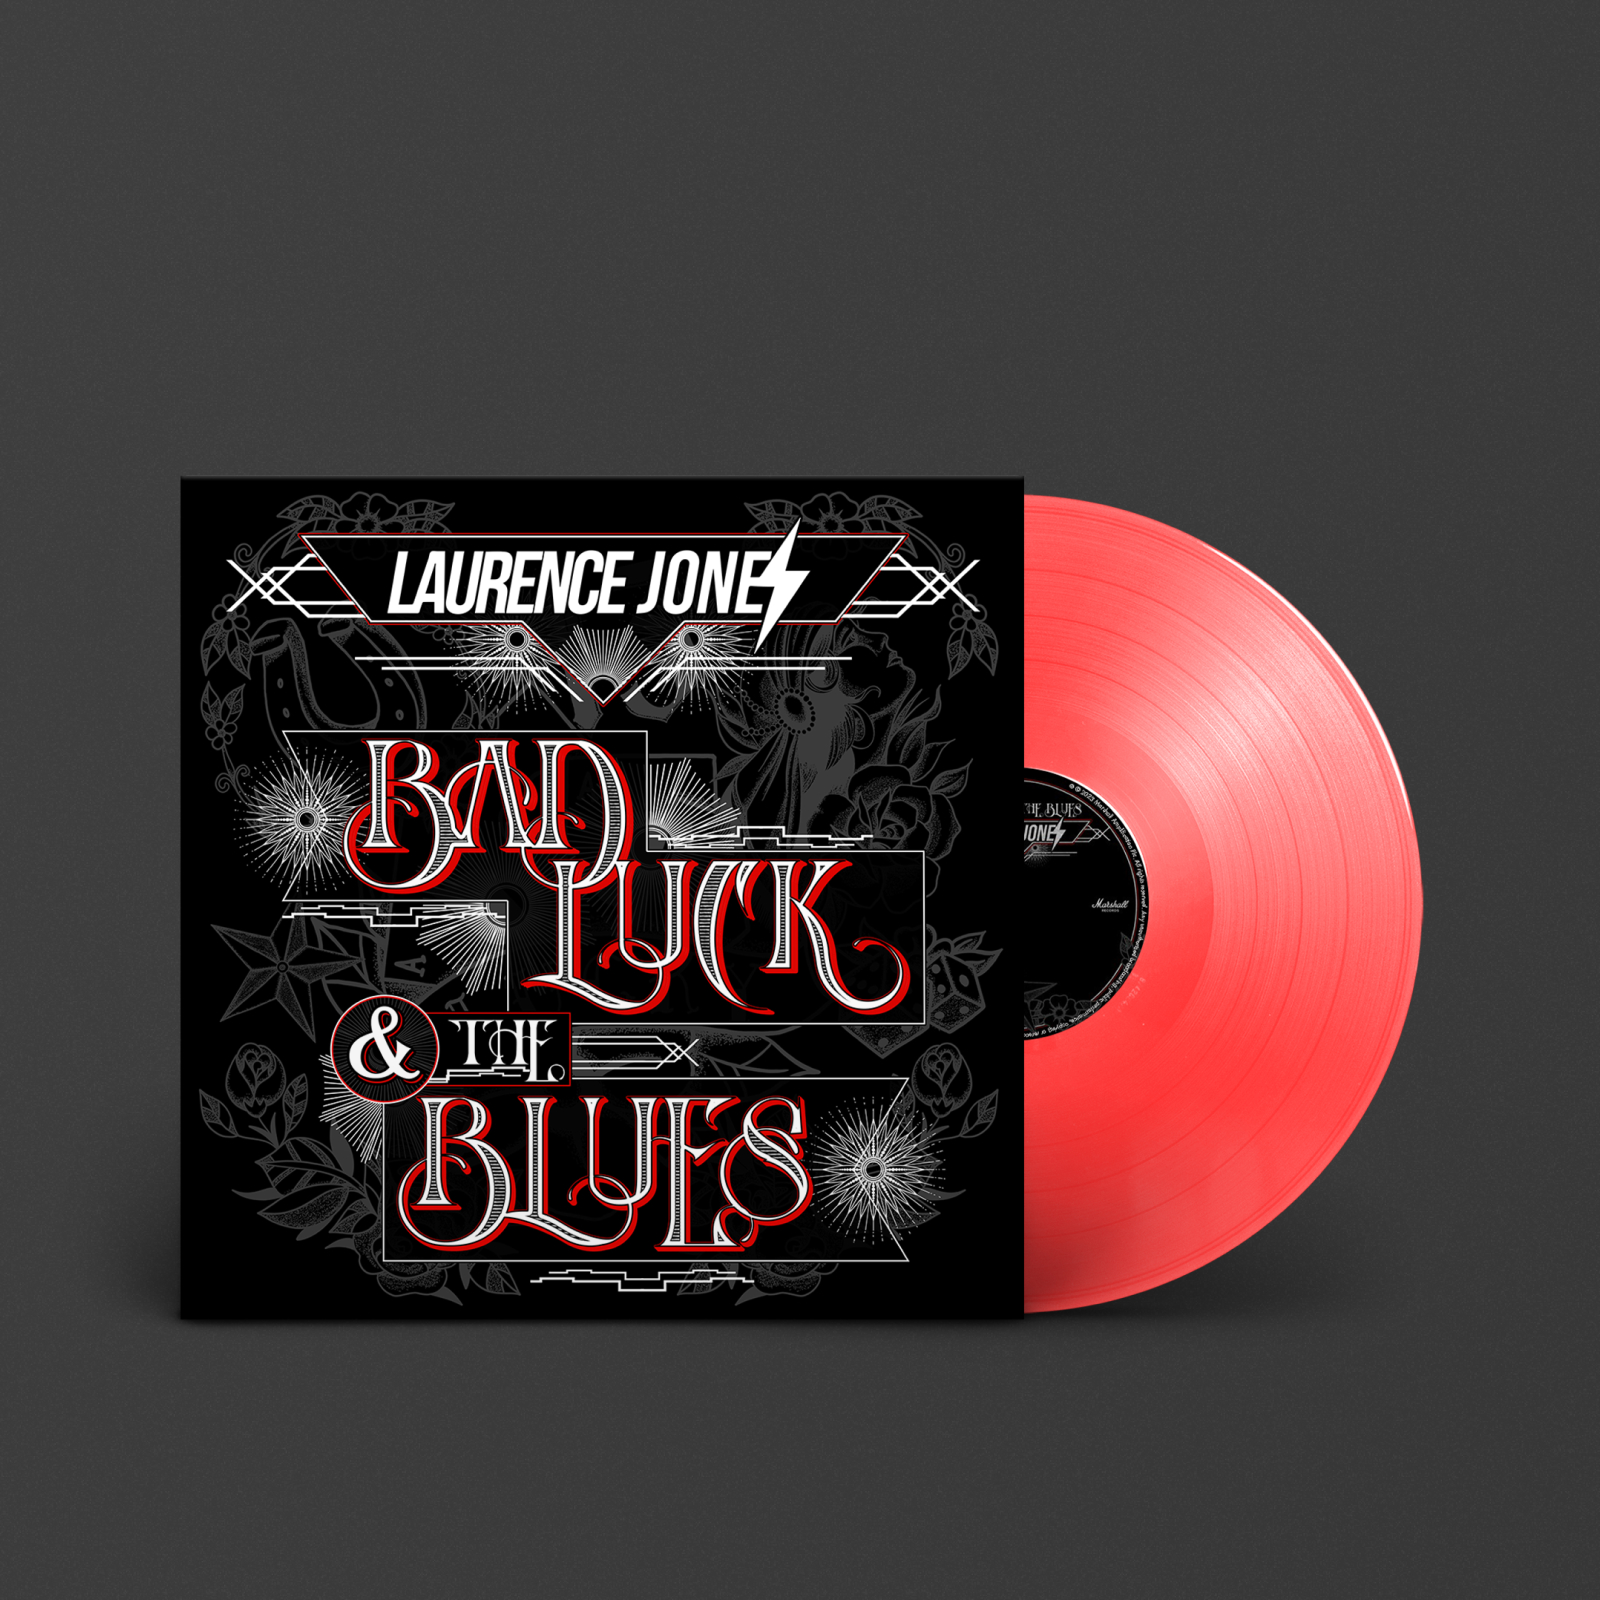 Abbildung einer roten Schallplatte mit dem Titel "Bad luck & the Blues" von Laurence Jones.